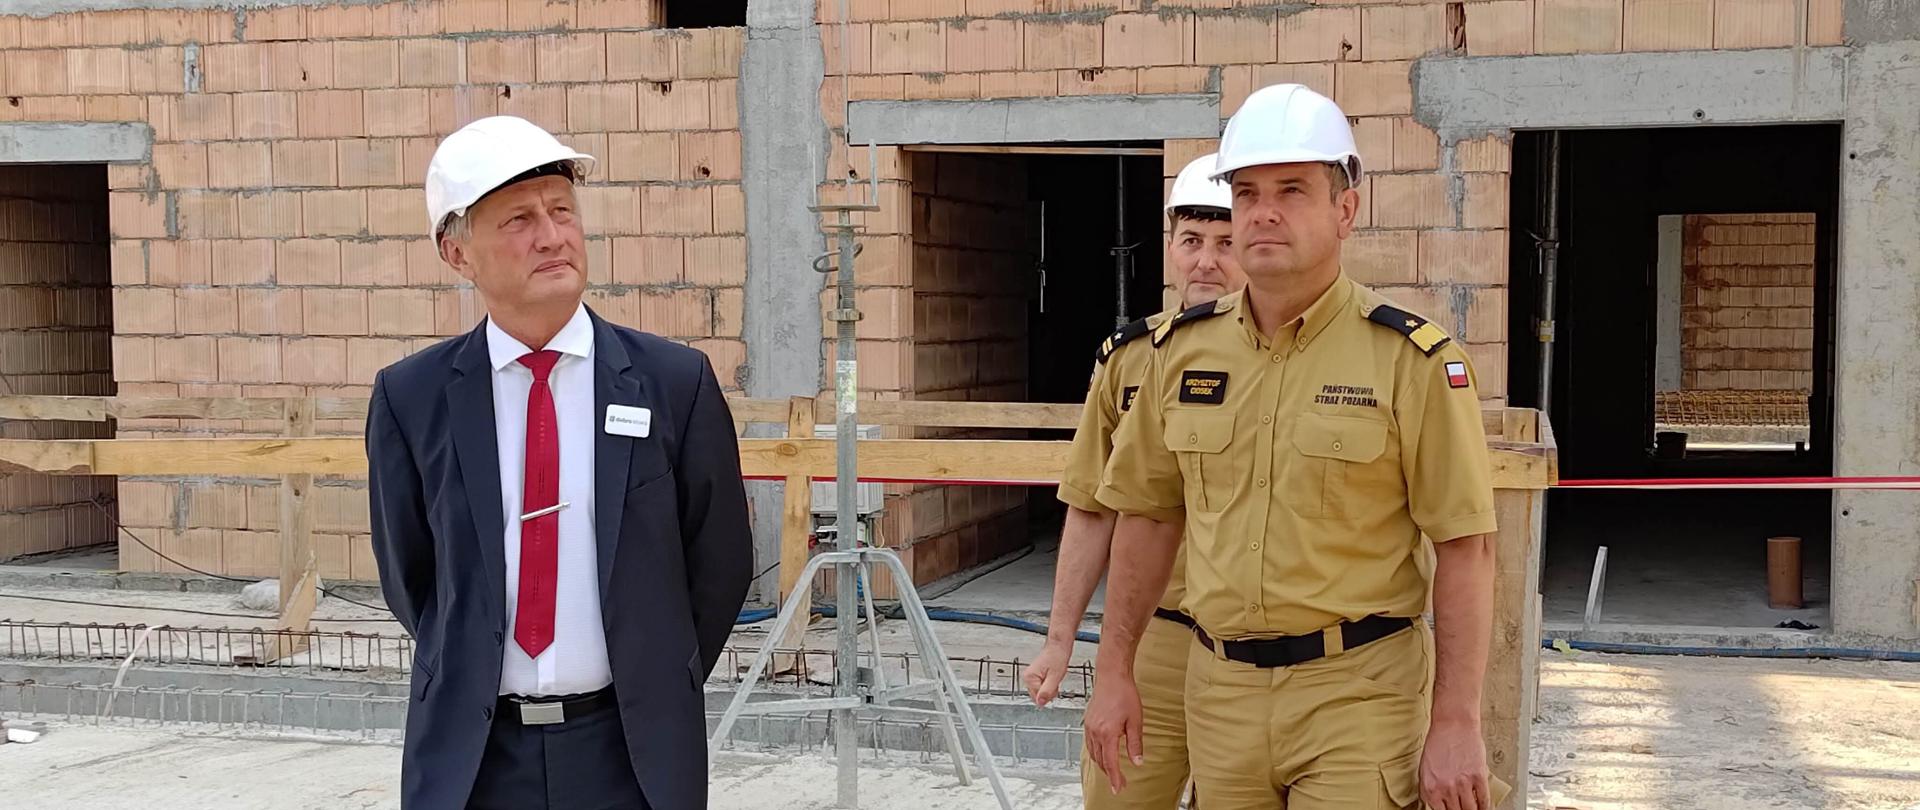 Wizytacja budowy nowej strażnicy w Końskich